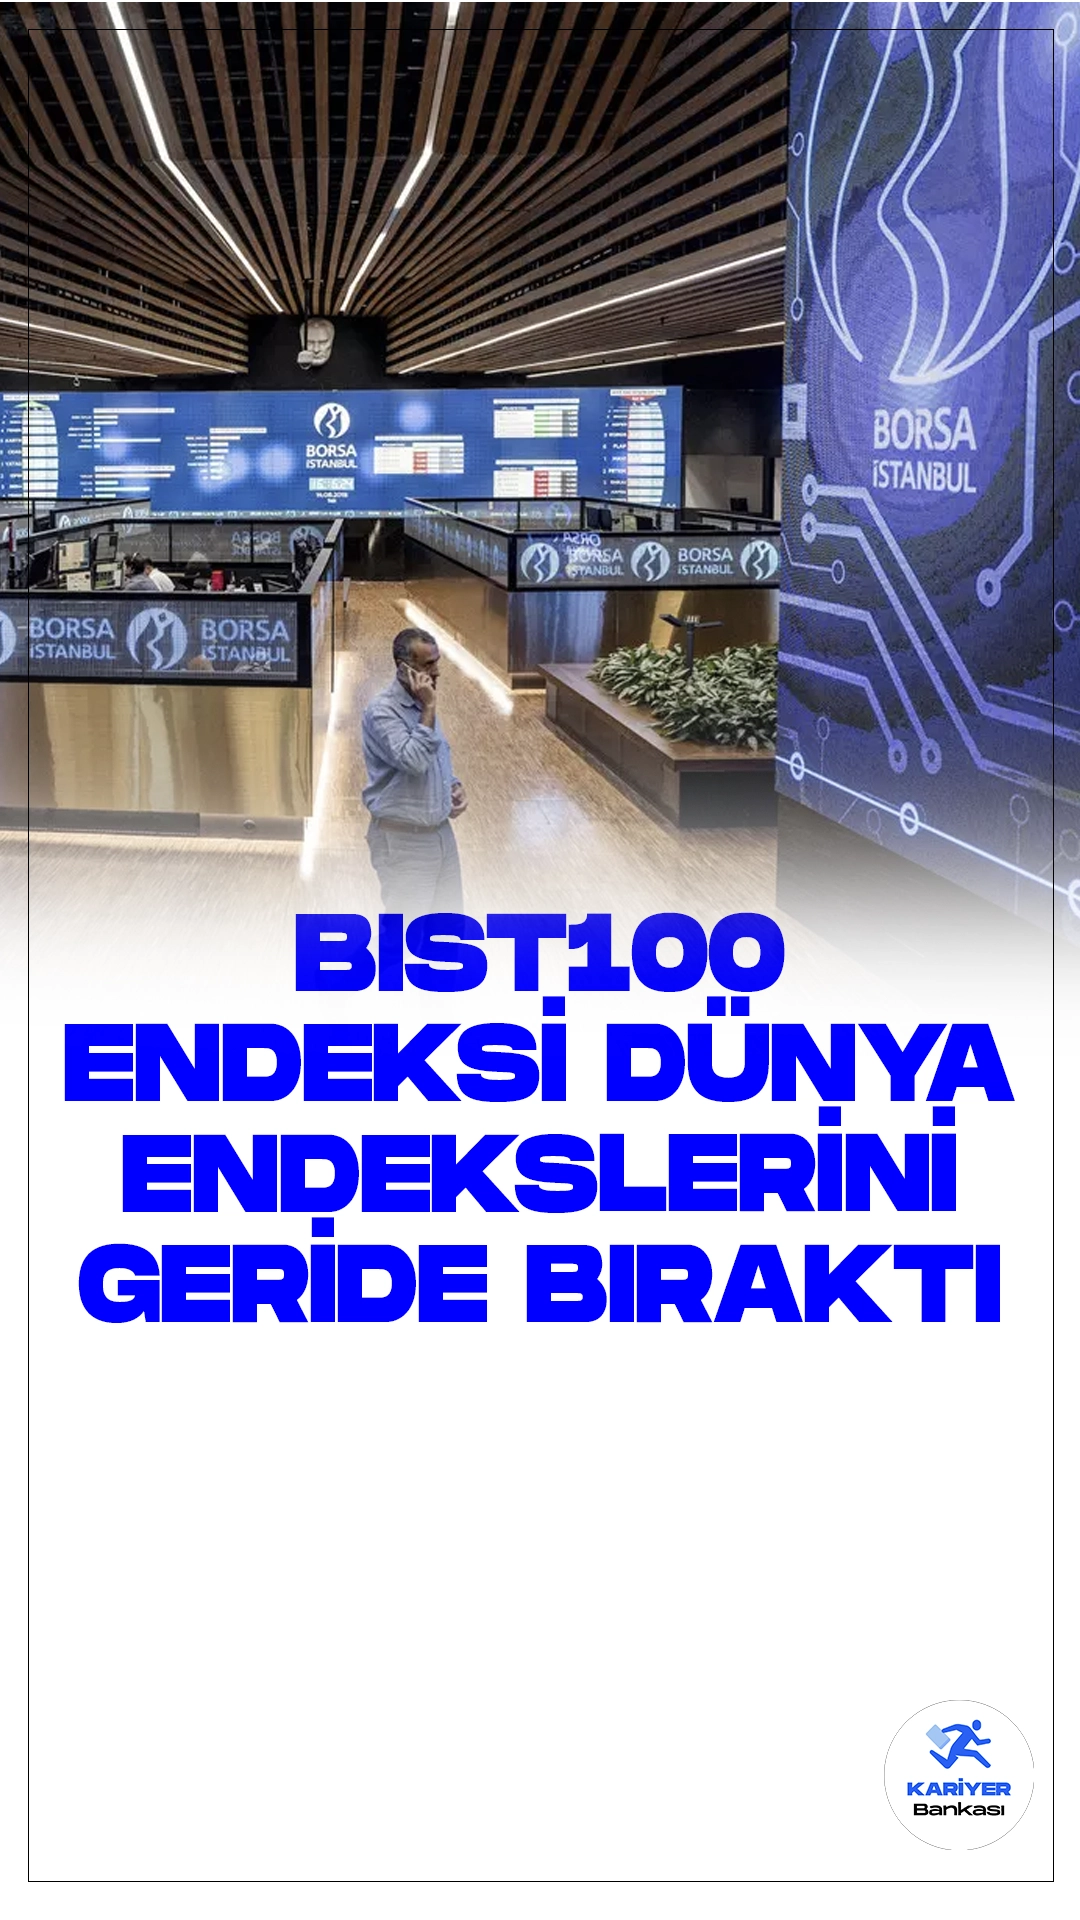 BIST 100 Endeksi Dünya Endekslerini Geride Bıraktı.Borsa İstanbul'da BIST 100 endeksi, yıl başından itibaren %23,07'lik bir değer kazancıyla, dünya endekslerini geride bırakarak önemli bir performans sergiliyor.